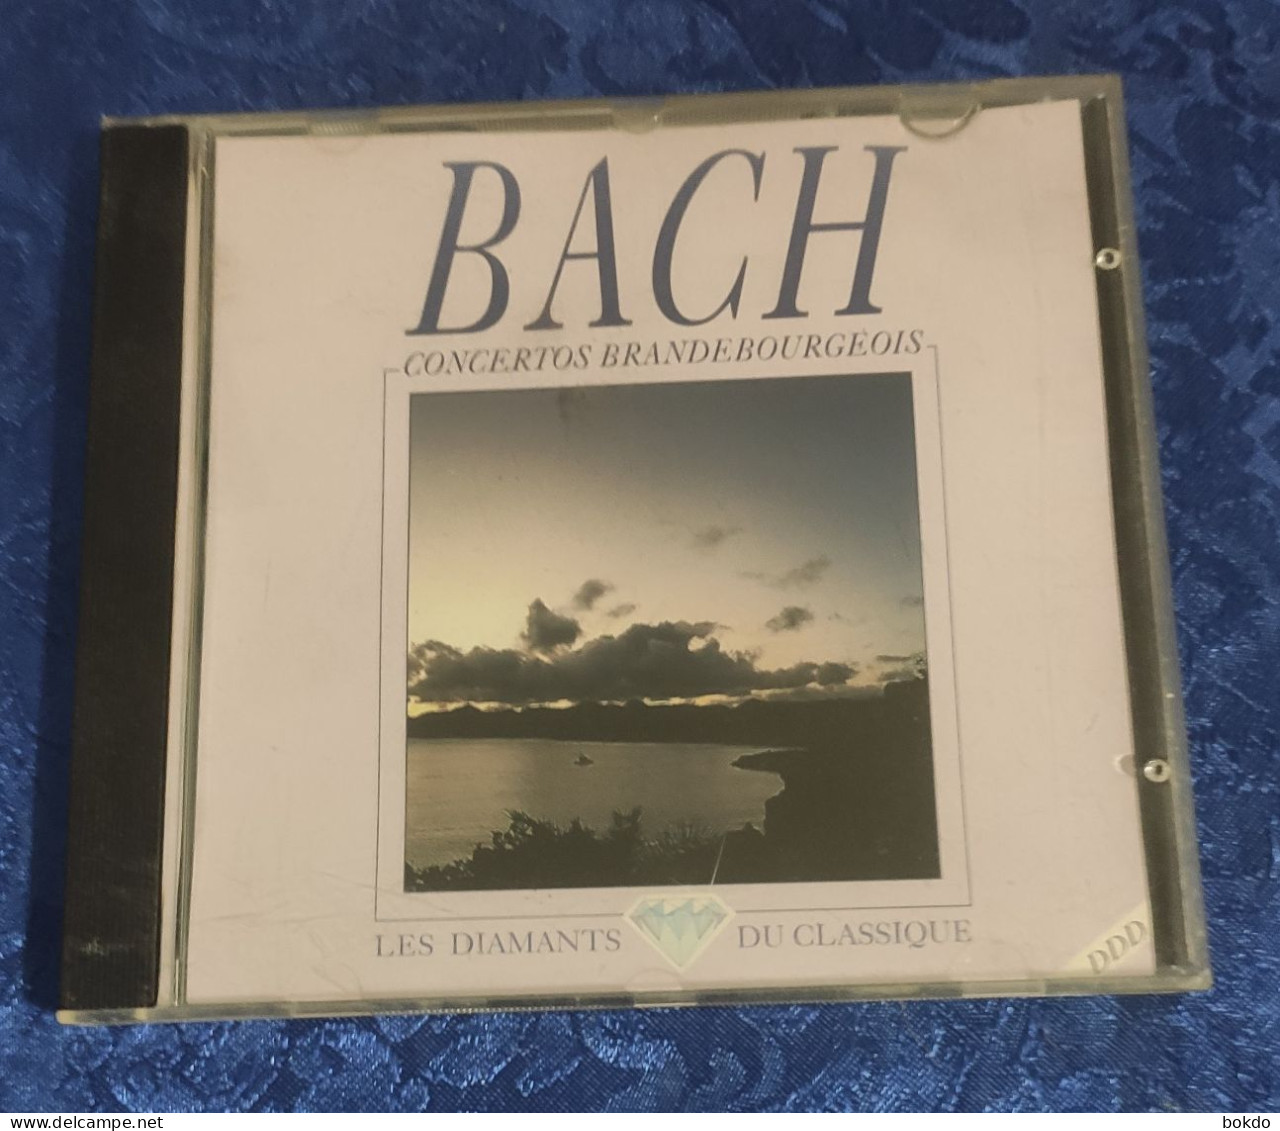 BACH - Concertos Brandebourgeois - Klassiekers